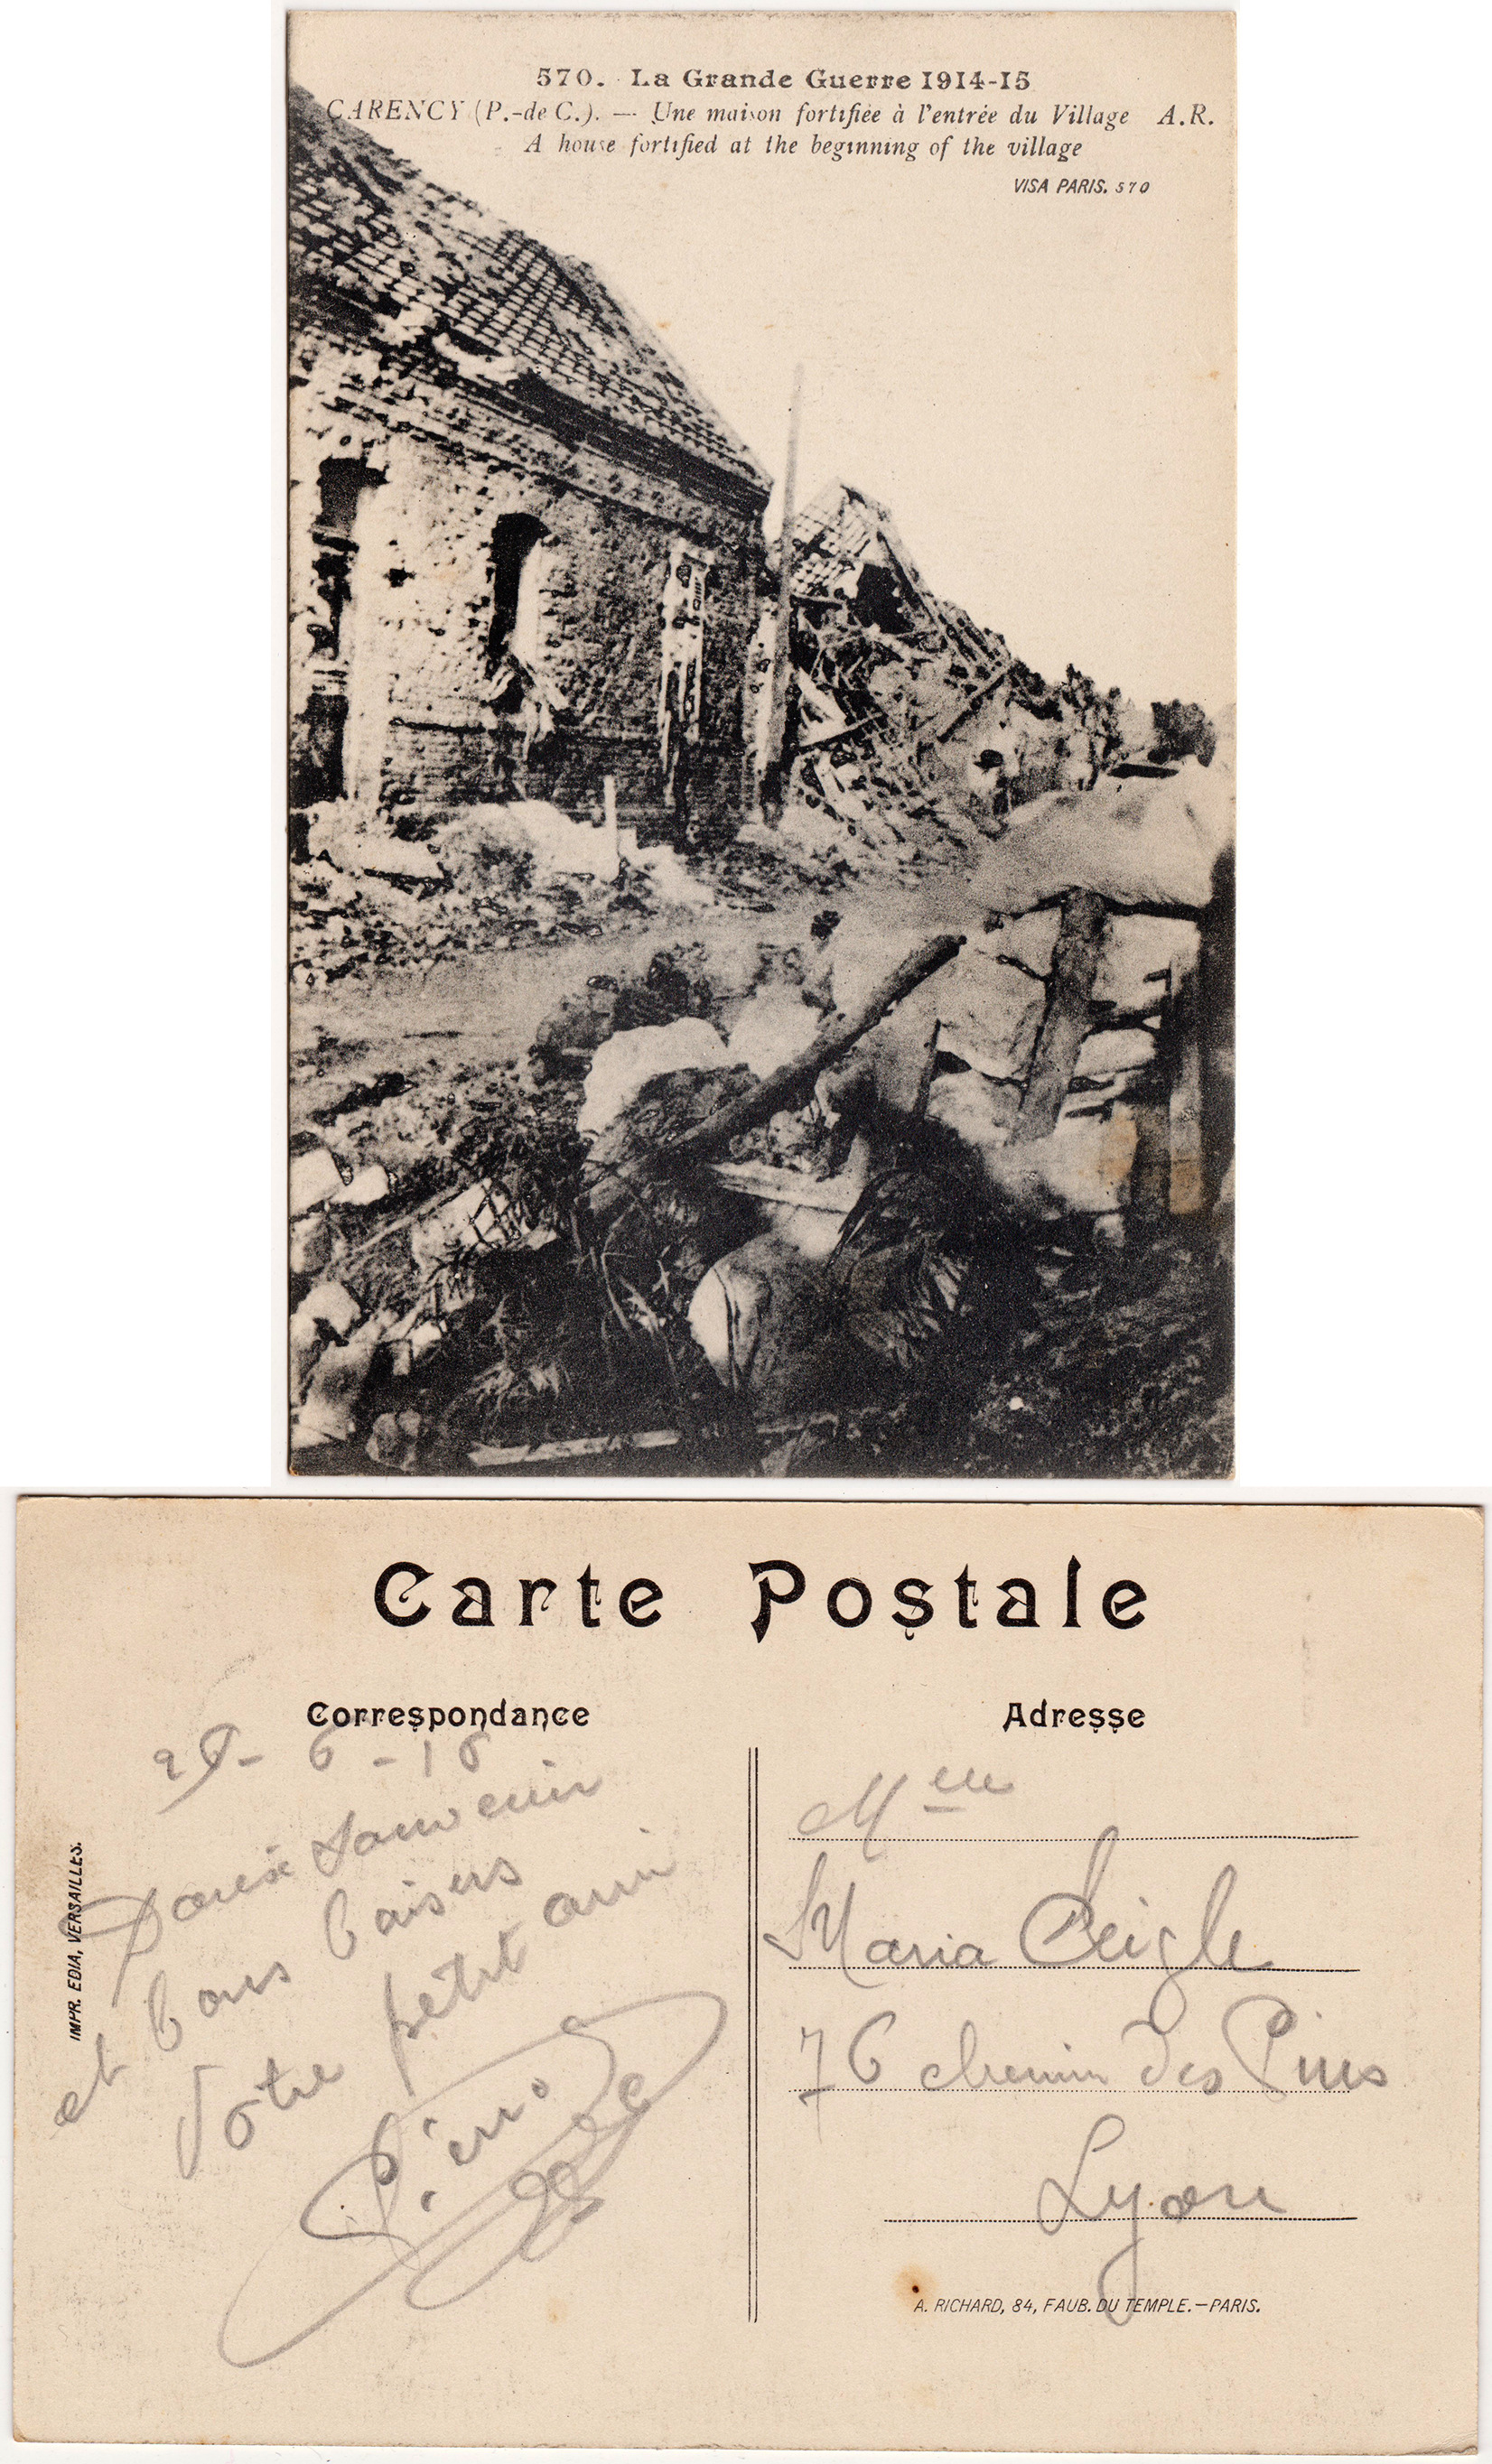 Cartes postales patriotiques françaises de la Grande Guerre - recensement - Page 3 7f27005203999e9ecfb0180525a73c962def7f1c